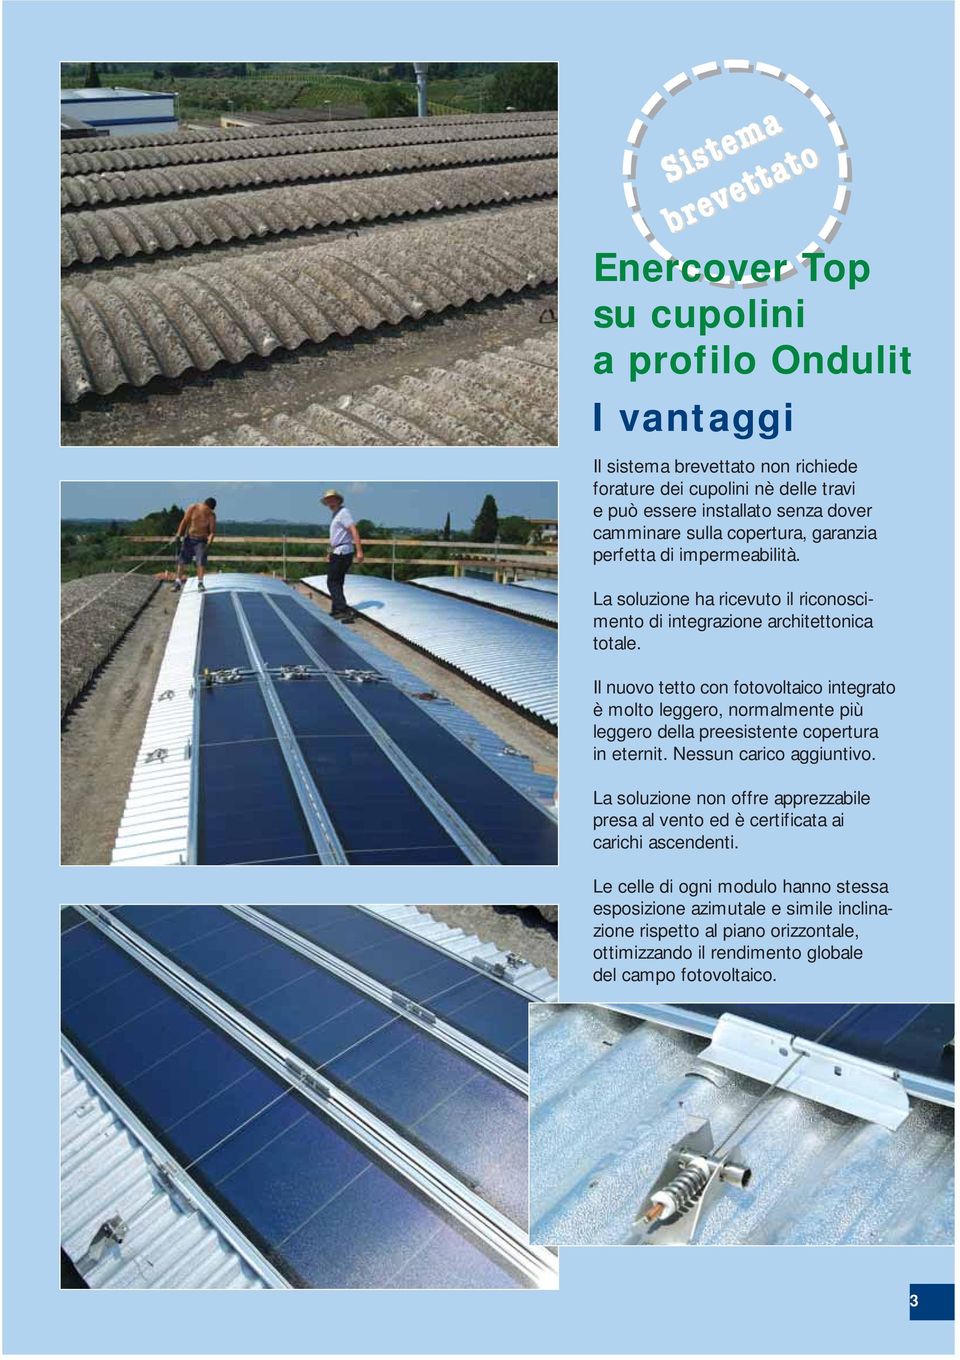 Il nuovo tetto con fotovoltaico integrato è molto leggero, normalmente più leggero della preesistente copertura in eternit. Nessun carico aggiuntivo.